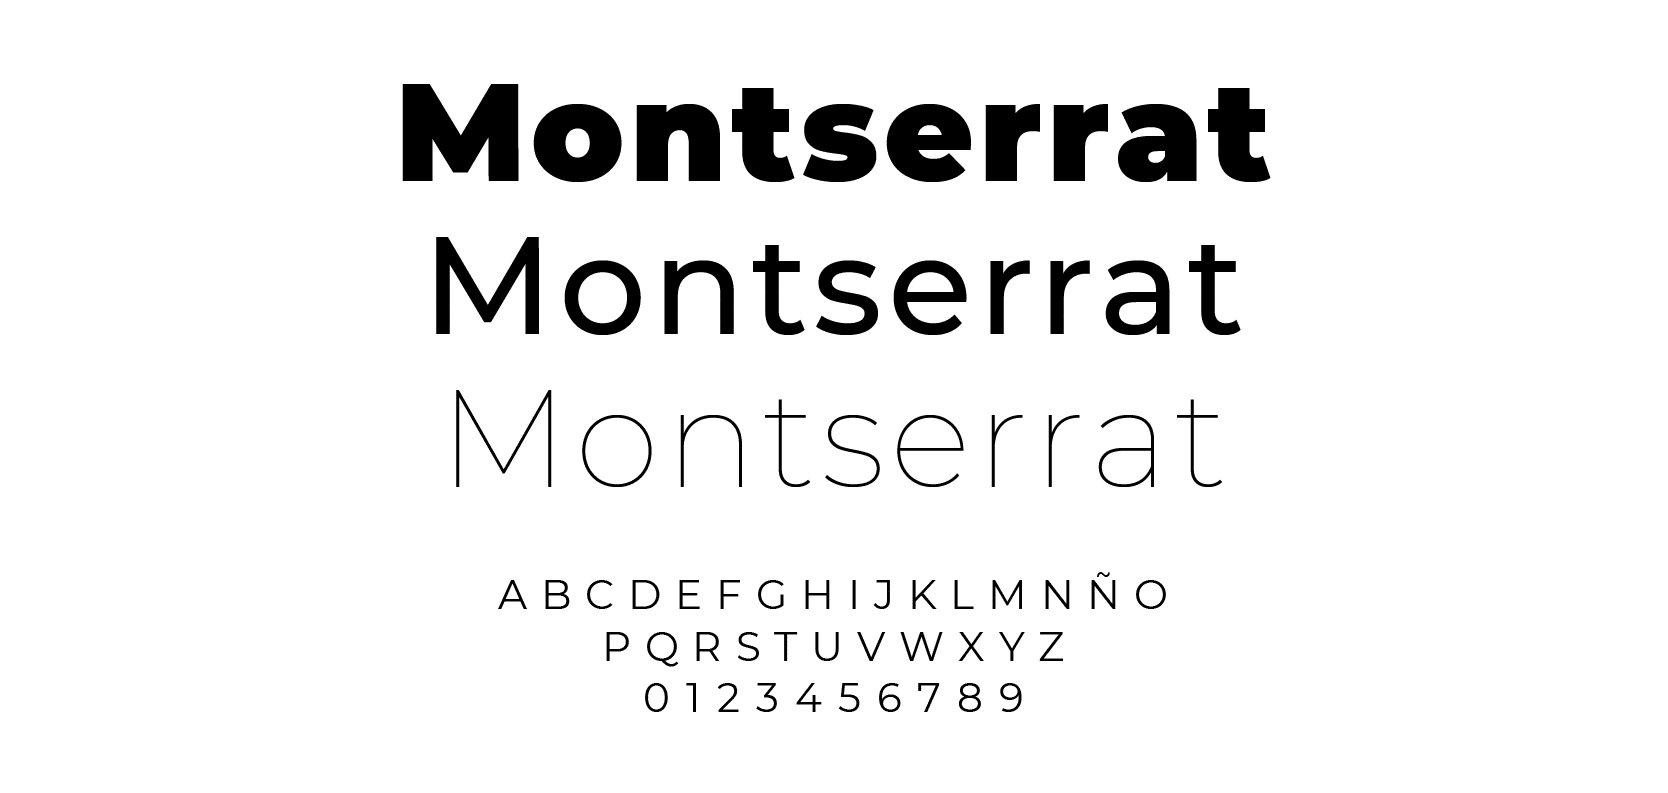 Montserrat - Le journal Du Marketing